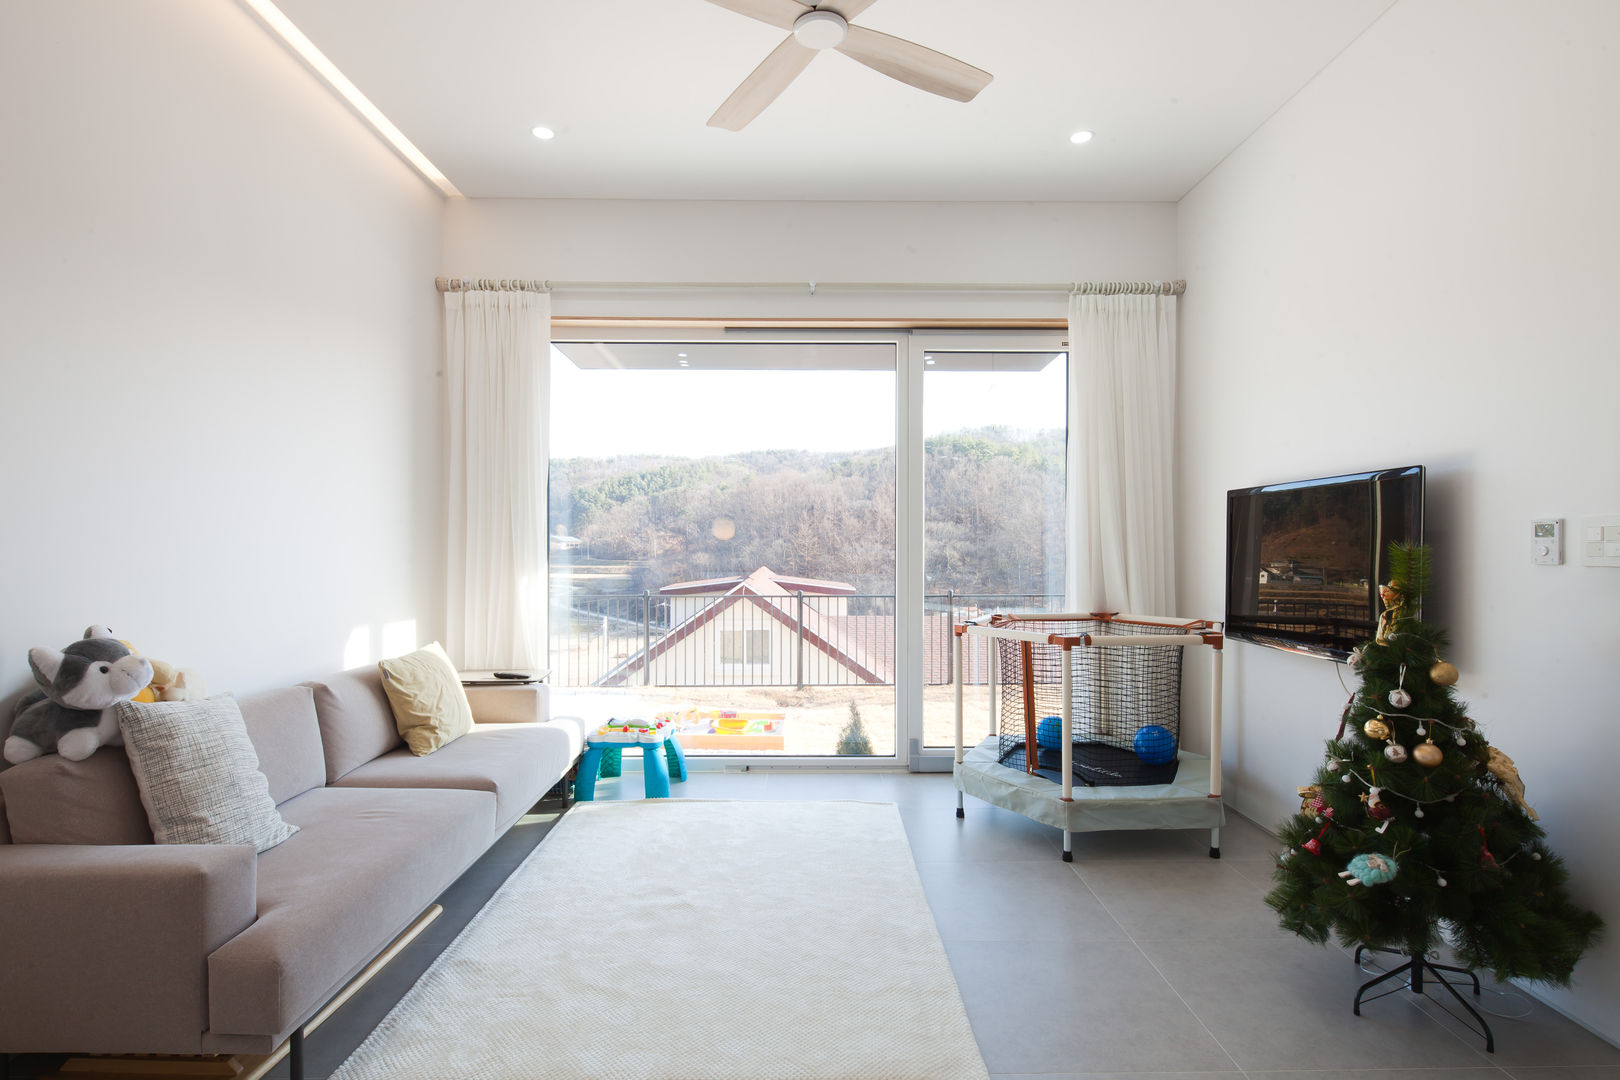 [양평전원주택] 양평군 양서면 도곡리 전원주택 실내/실외, 위드하임 Withheim 위드하임 Withheim Modern living room